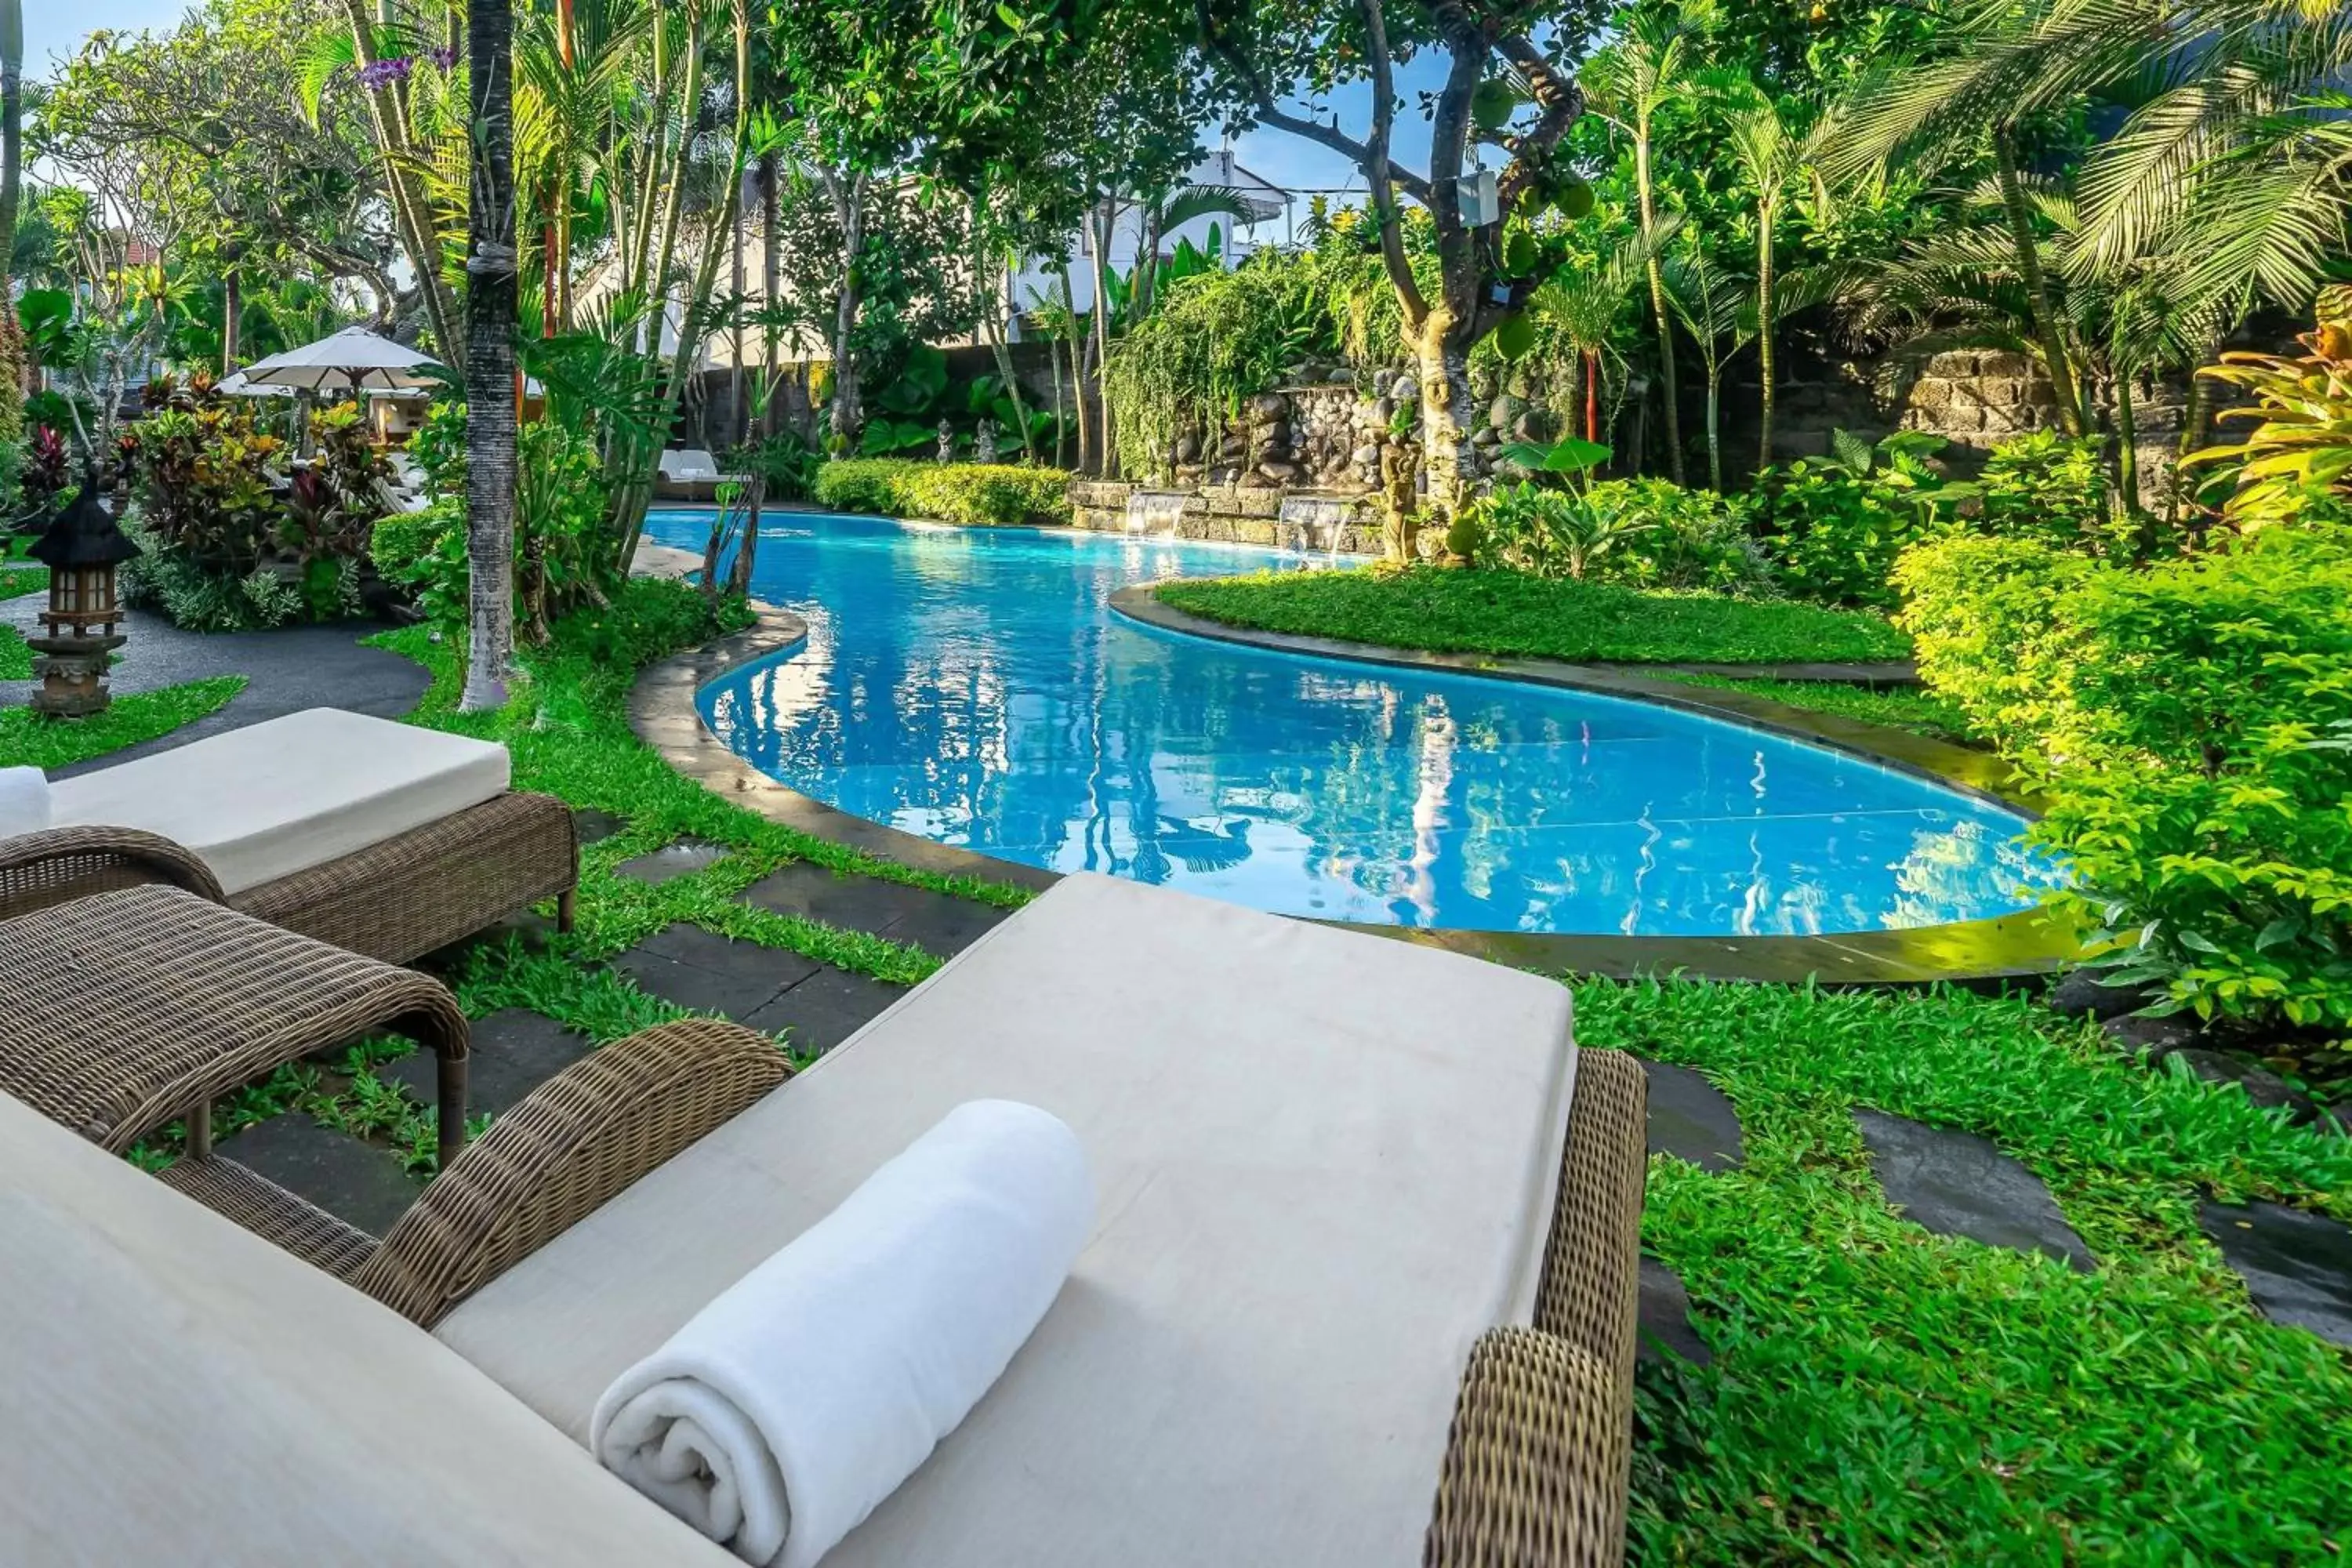 Swimming Pool in Klumpu Bali Resort